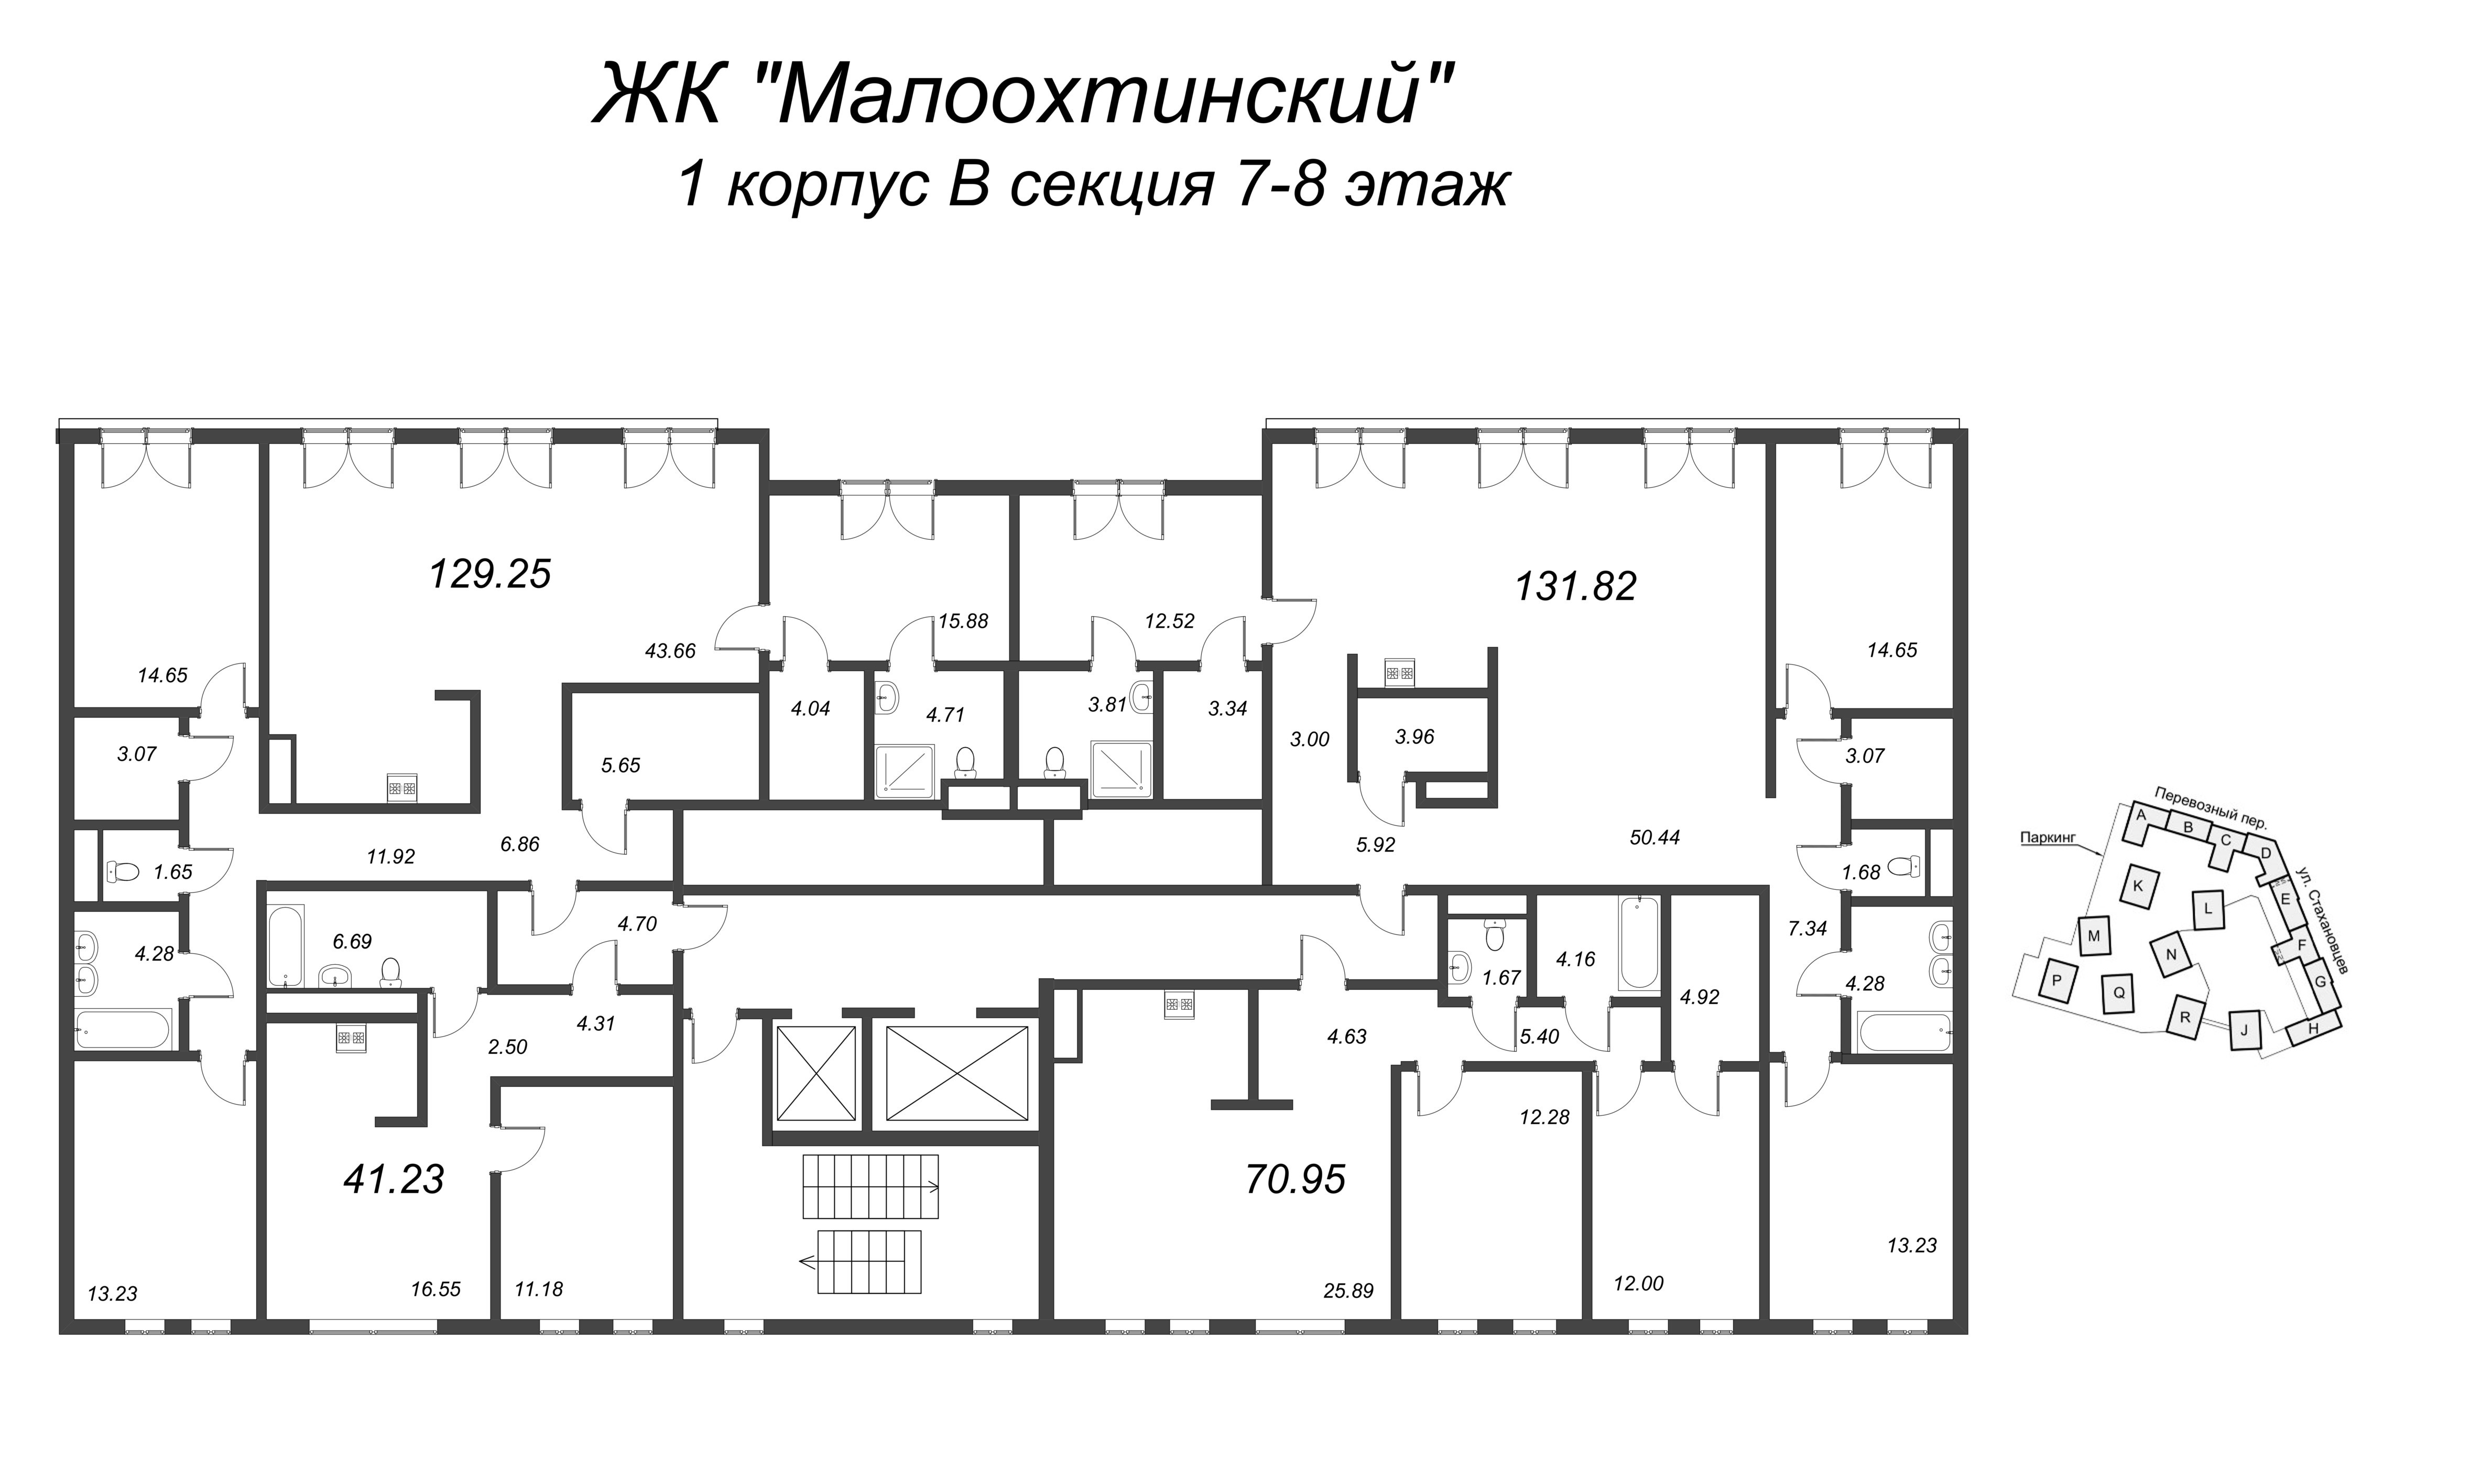 4-комнатная (Евро) квартира, 127 м² в ЖК "Малоохтинский, 68" - планировка этажа